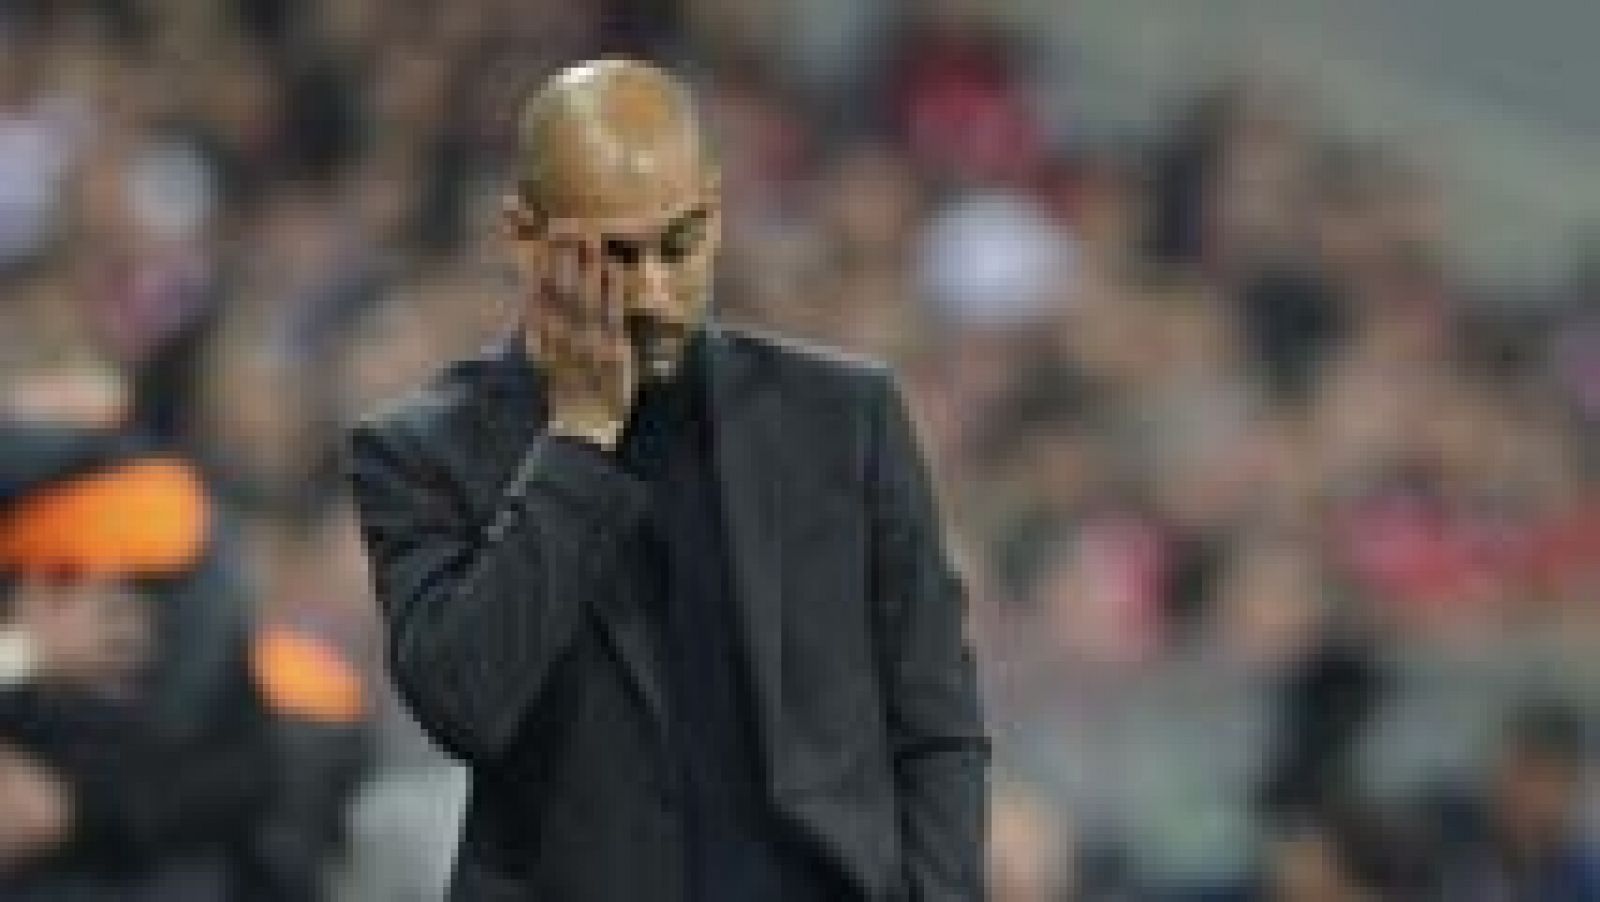 El entrenador del Bayern Múnich, Pep Guardiola, dijo que se había equivocado en el partido contra el Real Madrid y que por lo tanto la goleada encajada en casa (0-4) era su responsabilidad. "Me he equivocado en algunas cuestiones tácticas, es mi responsabilidad", dijo Guardiola.